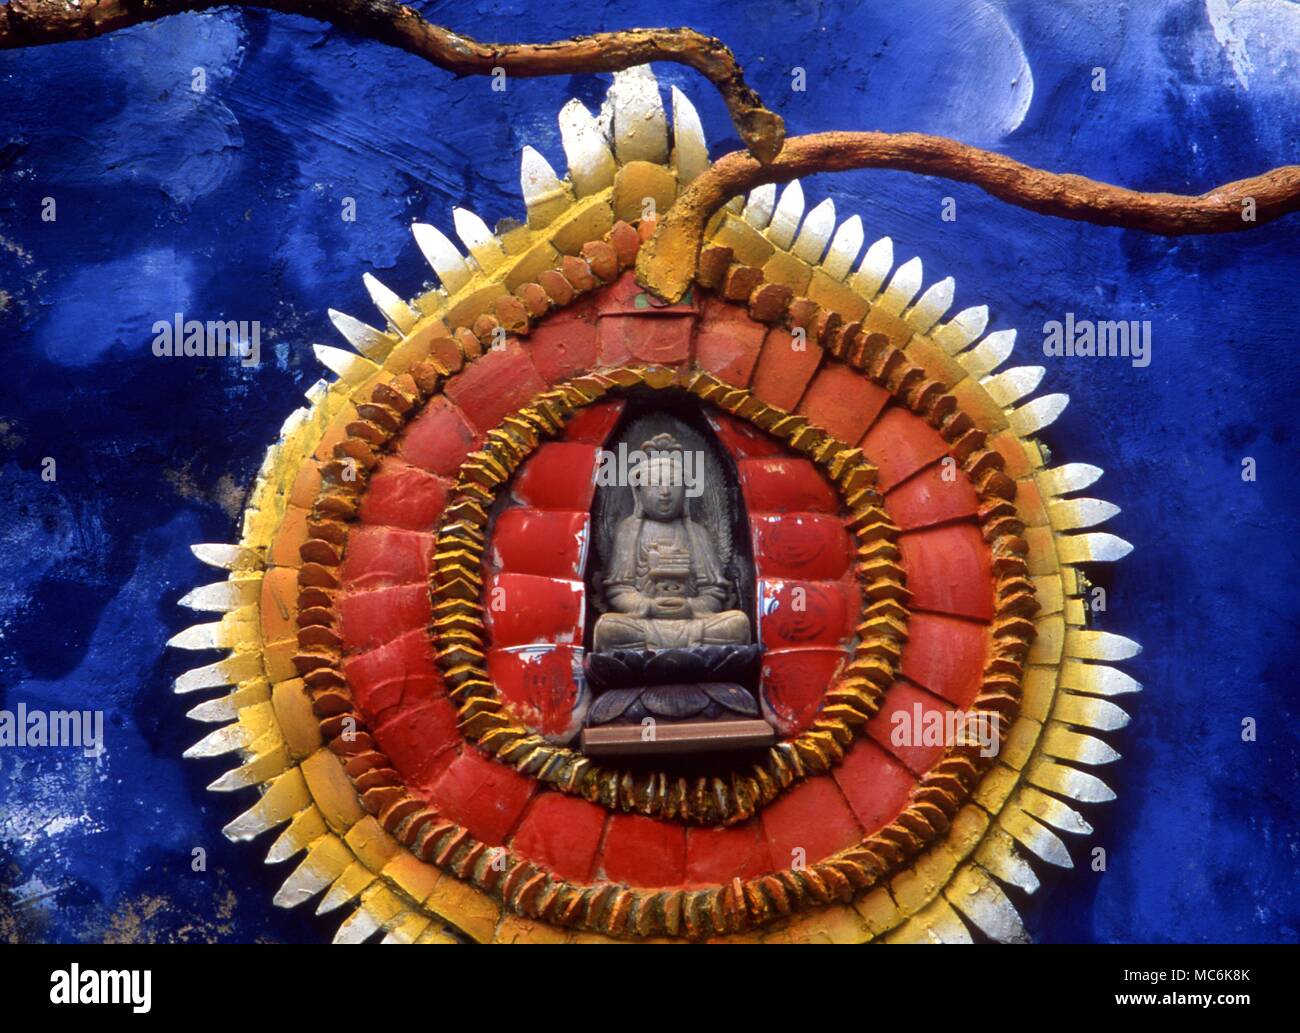 Astral Darstellung der astrale Körper des Buddha bezeichnet eine große Perle, die mehrere Meilen wurden aus dem Tiger Balm Park Hong Kong angeblich Stockfoto